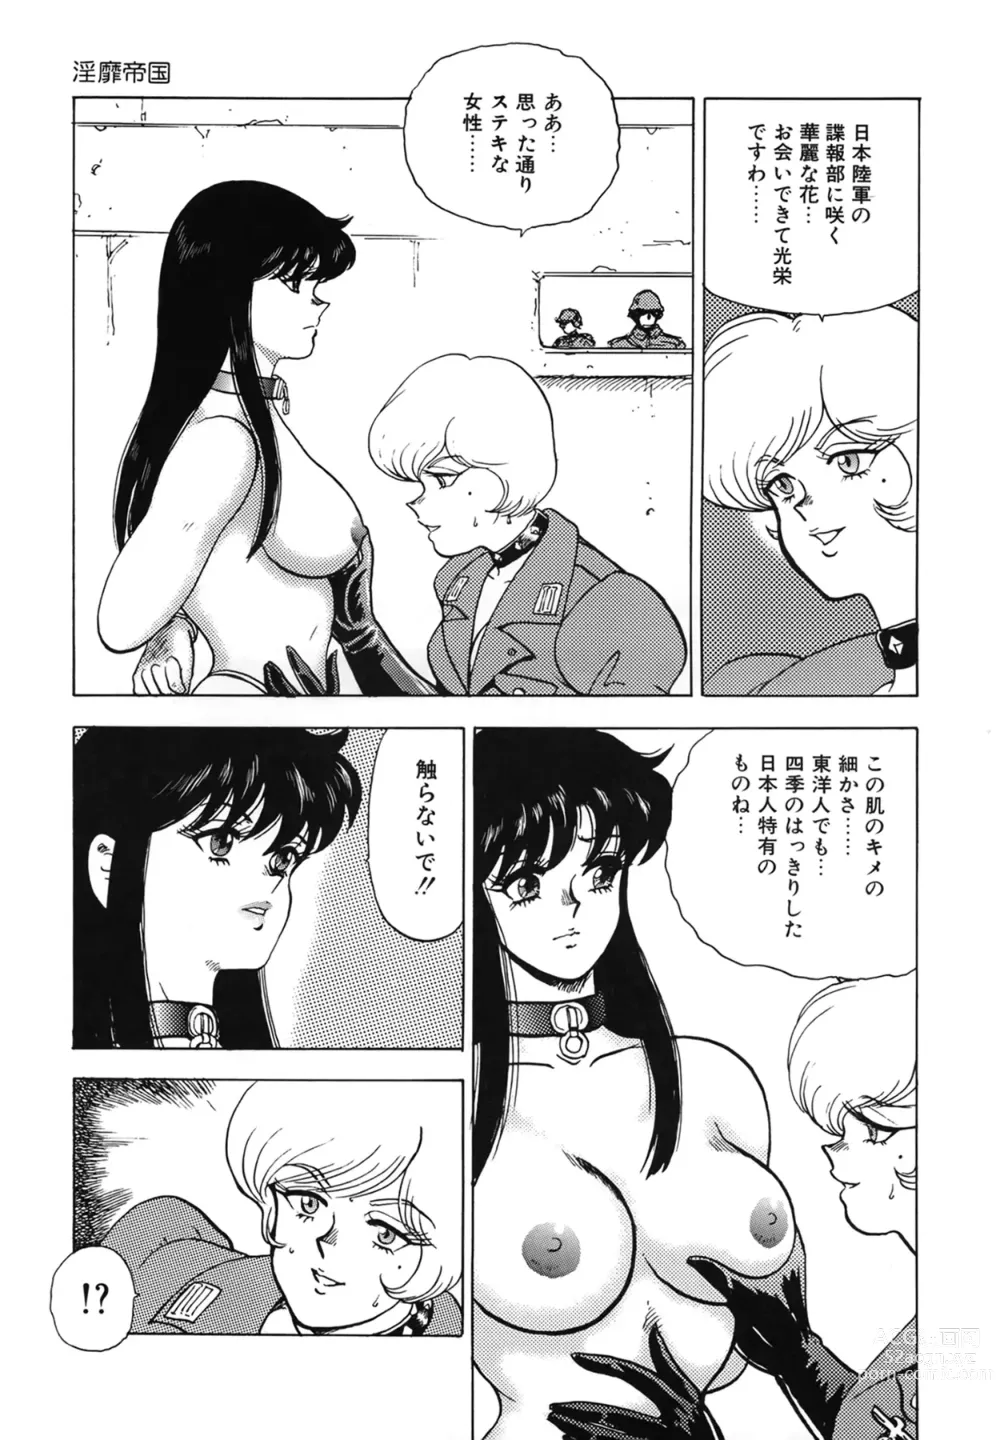 Page 15 of manga Inbi Teikoku